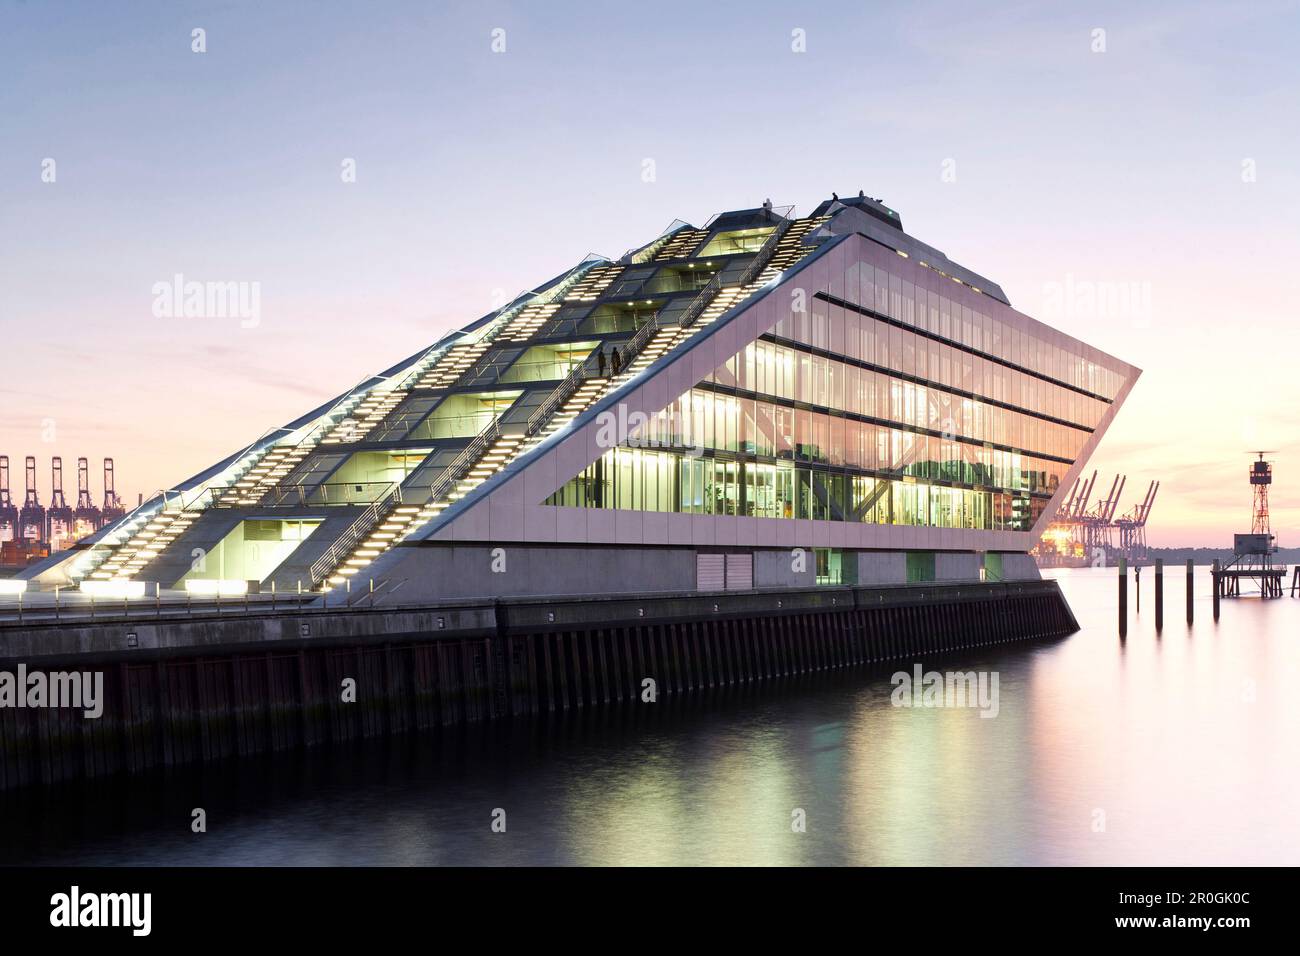 Architettura moderna Dockland, porto di Amburgo, architetto Hadi Teherani, città anseatica di Amburgo, Germania, Europa Foto Stock